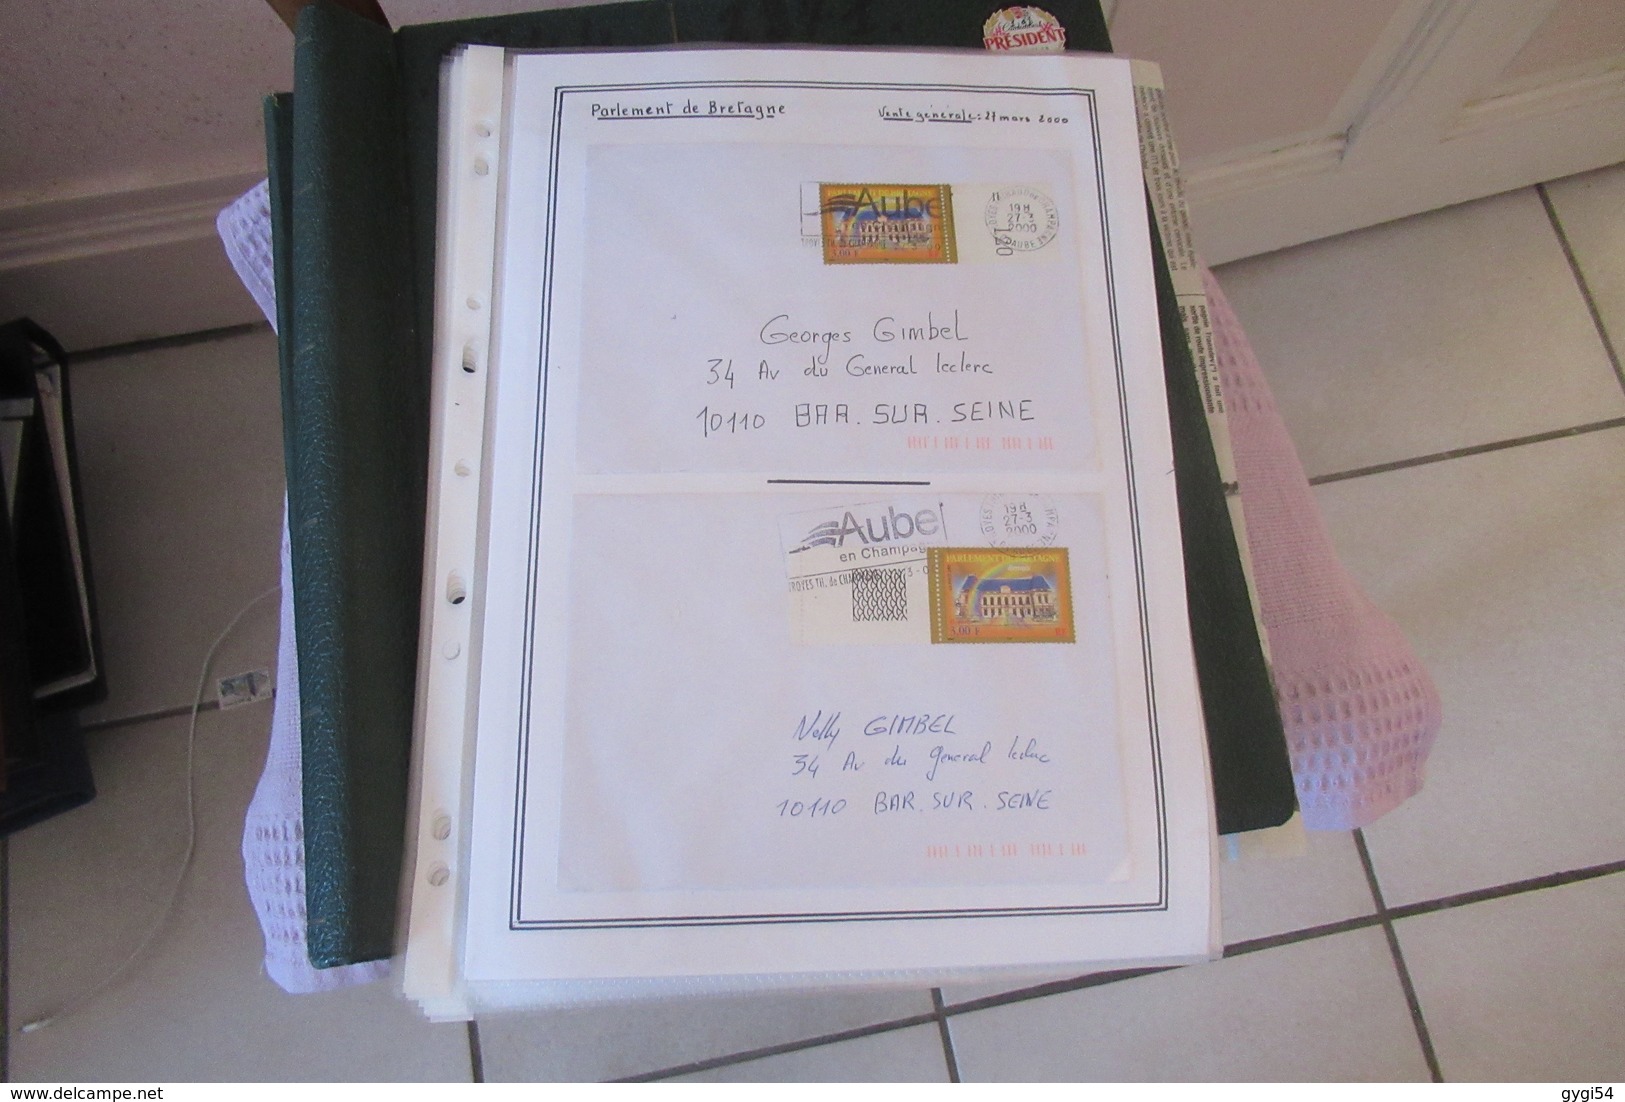 France  lettres  avec  timbres Oblitérés de l' année 2000     95   scans